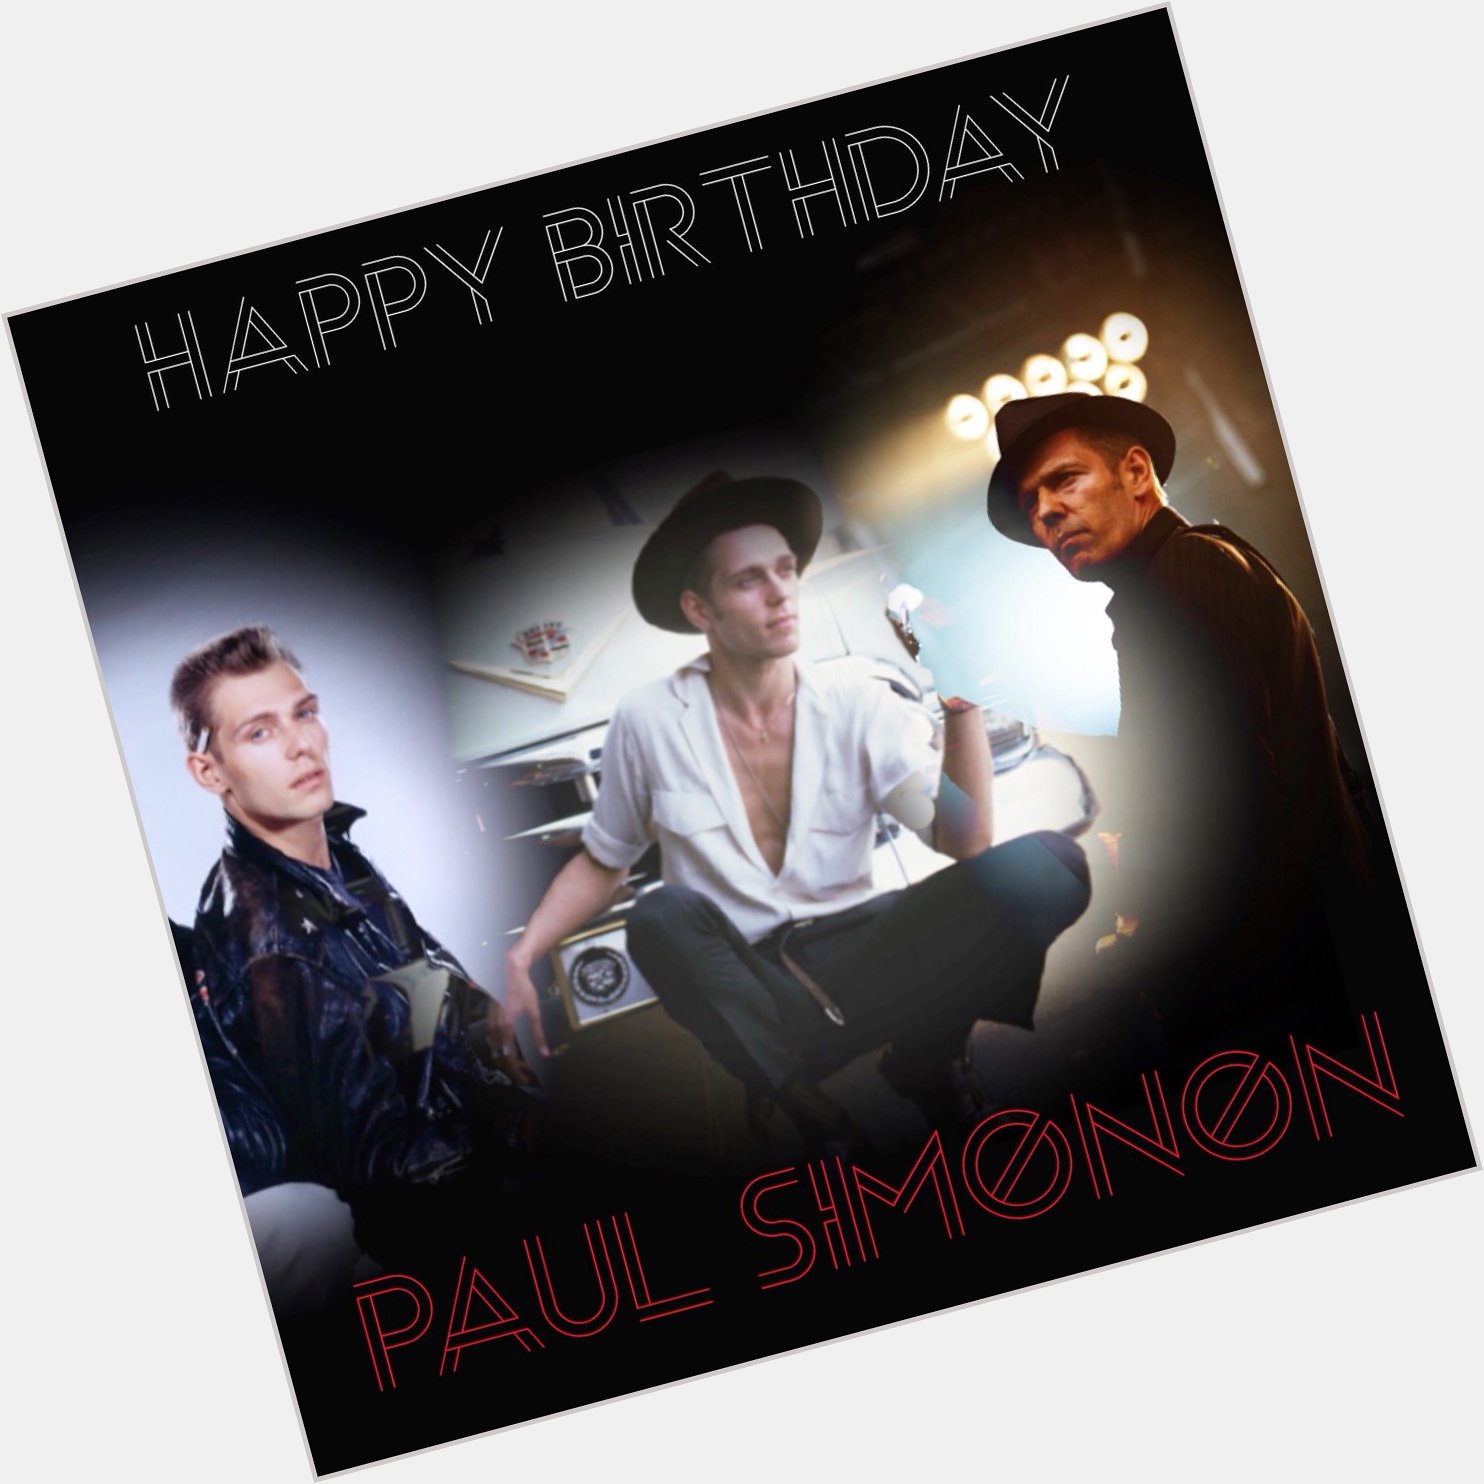 Happy Birthday Paul Simonon       